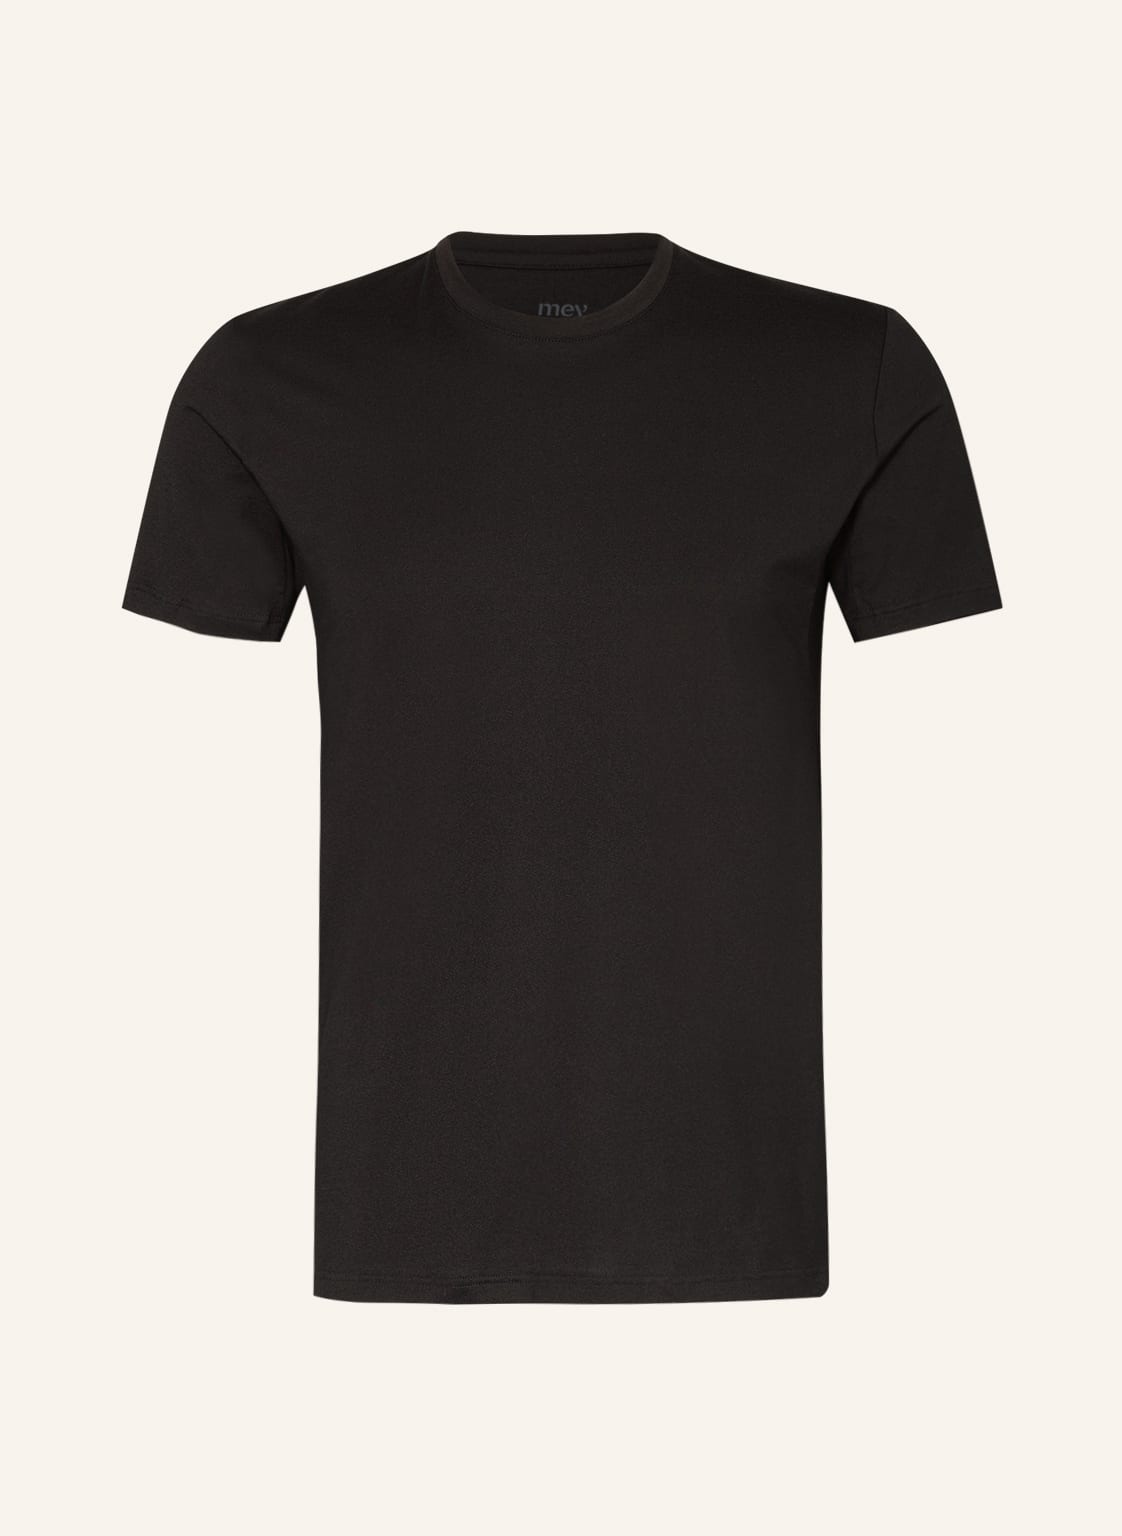 Mey Hybrid-Shirt Serie Myfunctionals schwarz von mey